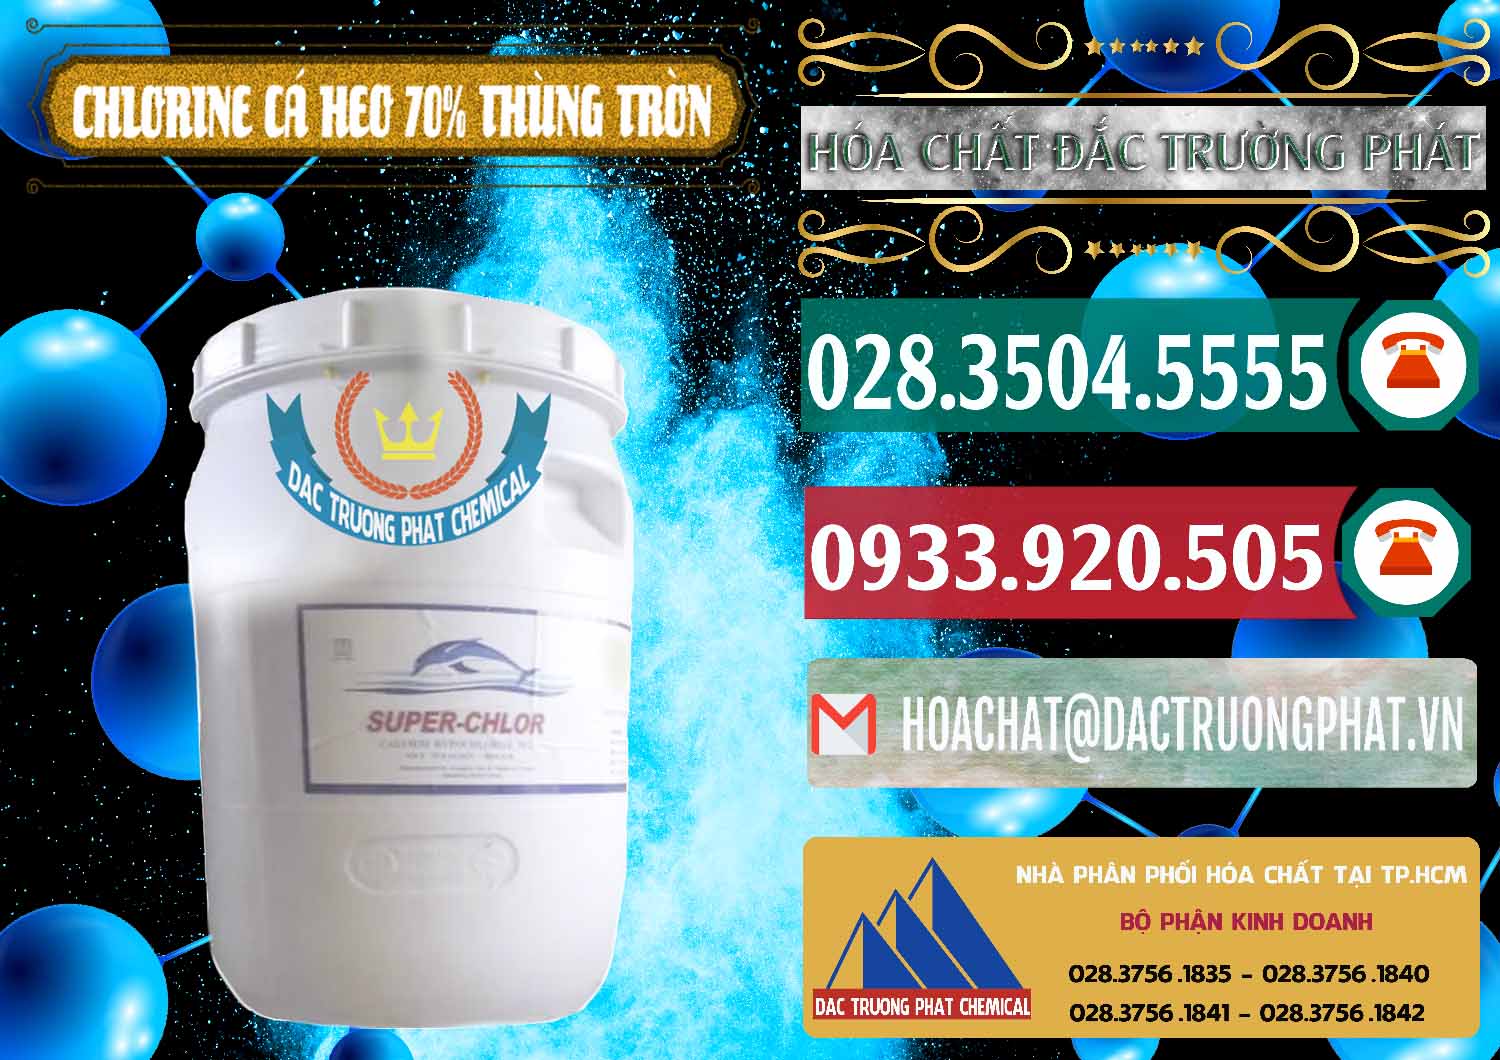 Nơi chuyên nhập khẩu ( bán ) Clorin - Chlorine Cá Heo 70% Super Chlor Thùng Tròn Nắp Trắng Trung Quốc China - 0239 - Nơi chuyên bán và phân phối hóa chất tại TP.HCM - muabanhoachat.vn